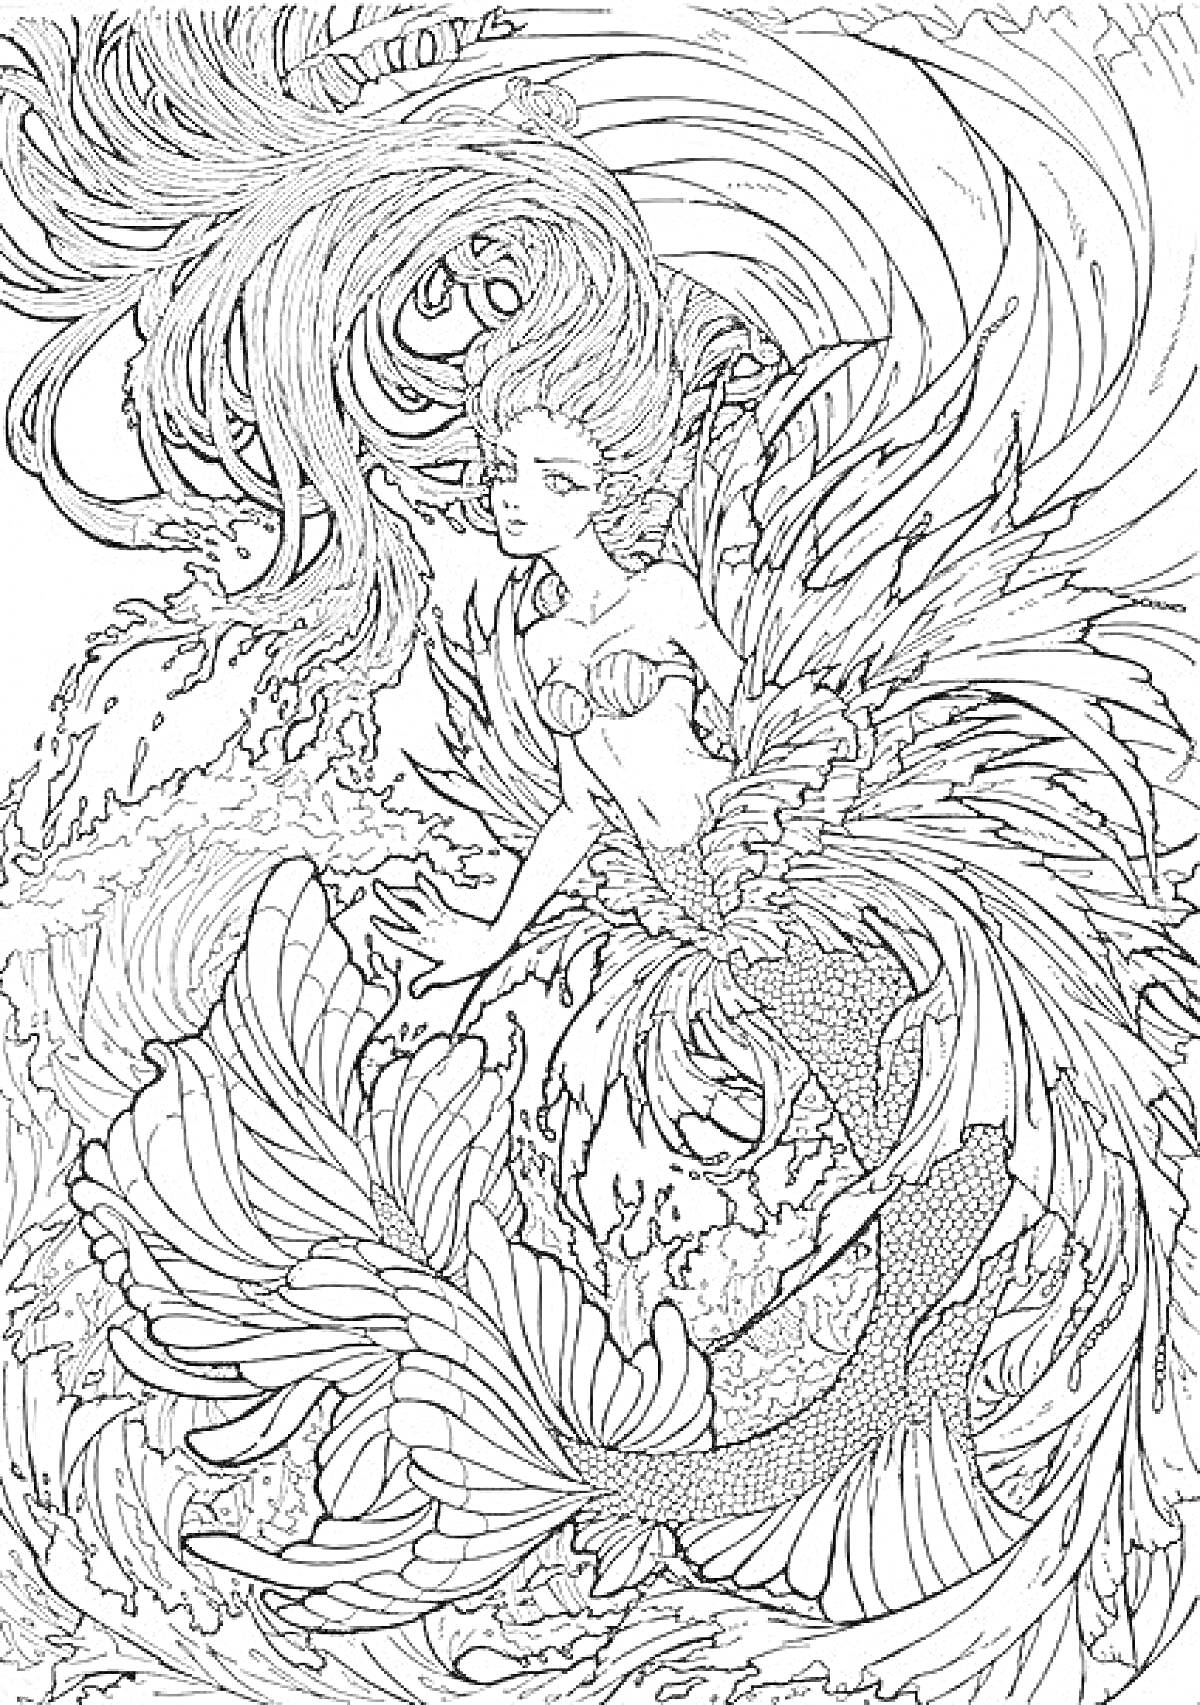 Раскраска Сирена среди волнистых узоров с длинными волосами, раковиной бюстгальтер, чешуйчатым хвостом и плавниками, окружённая волнами